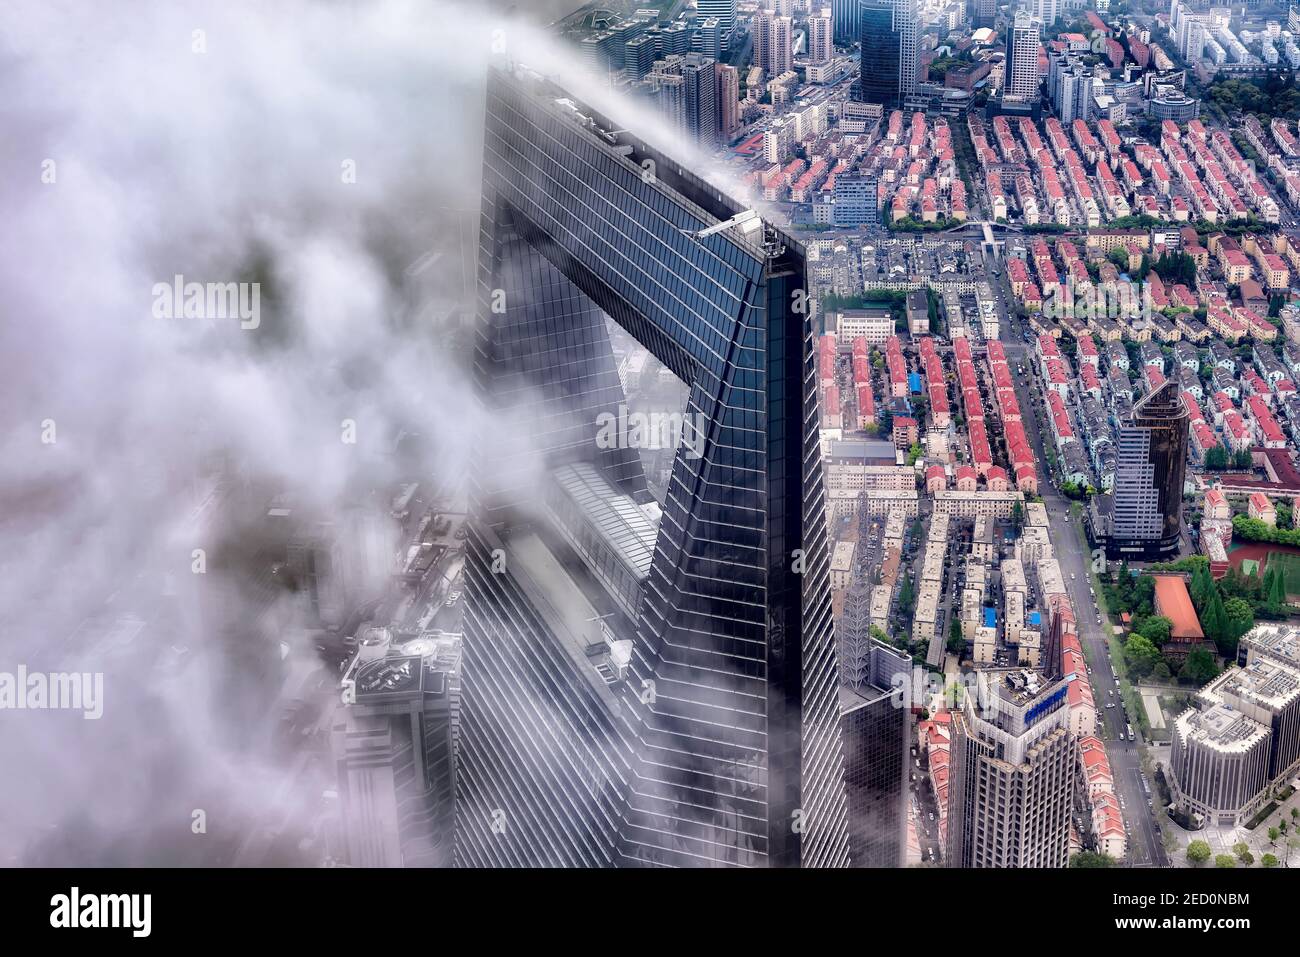 Shanghai, Chine - 20 avril 2019 : vue du Centre financier mondial de Shanghai émergeant des nuages. Le WFC est un gratte-ciel très grand situé à Pudong Banque D'Images